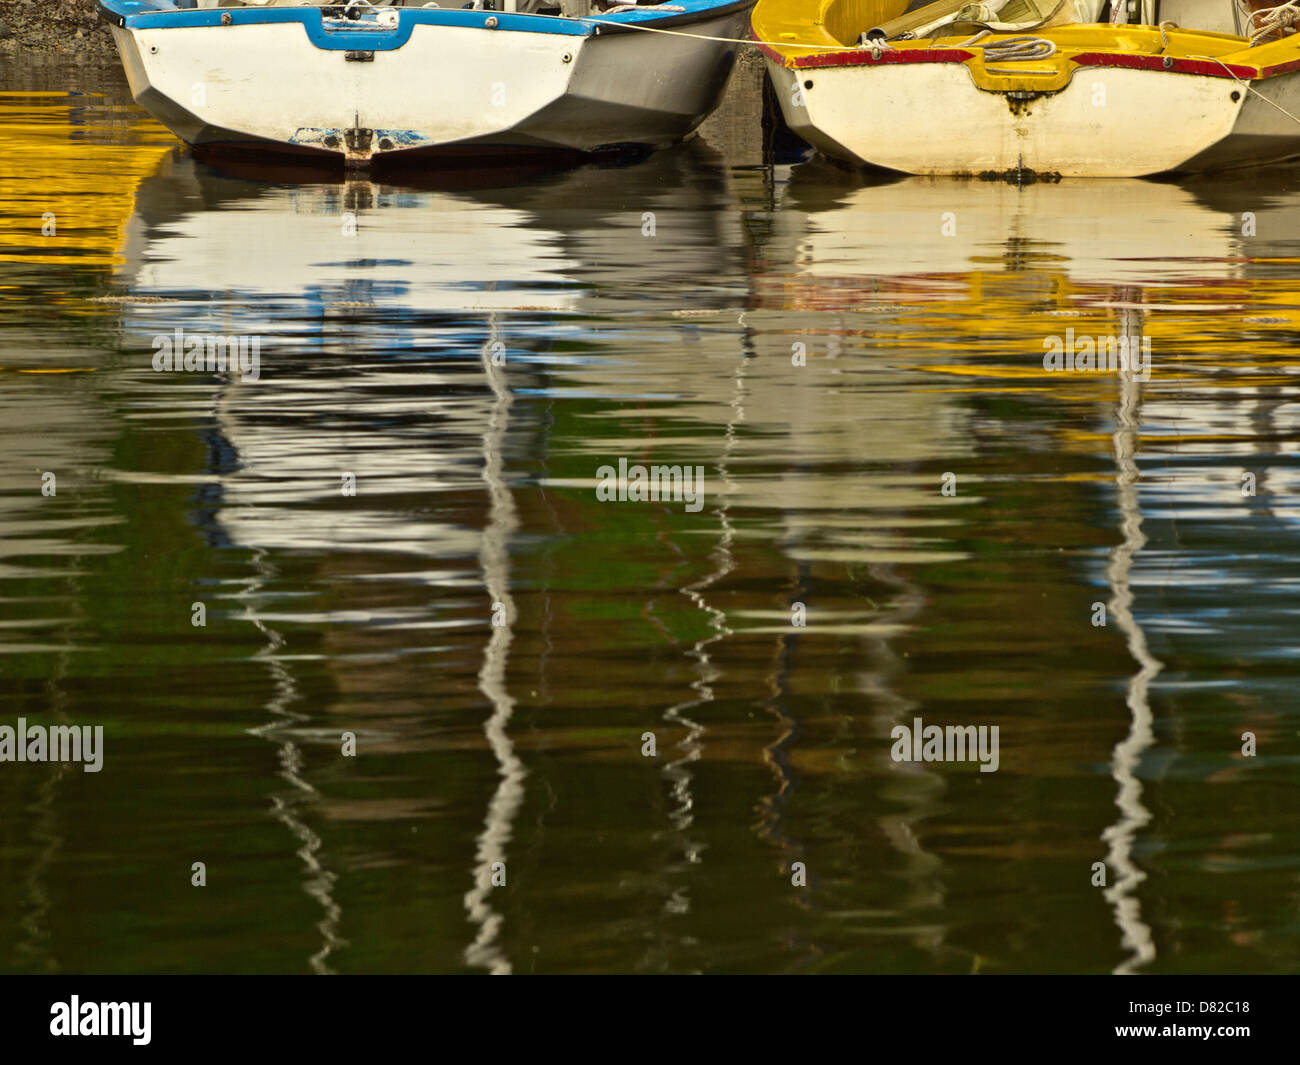 Contemporanea immagine astratta delle barche sulla riva del lago, Nicol fine, Lake District, Cumbria, Regno Unito Foto Stock